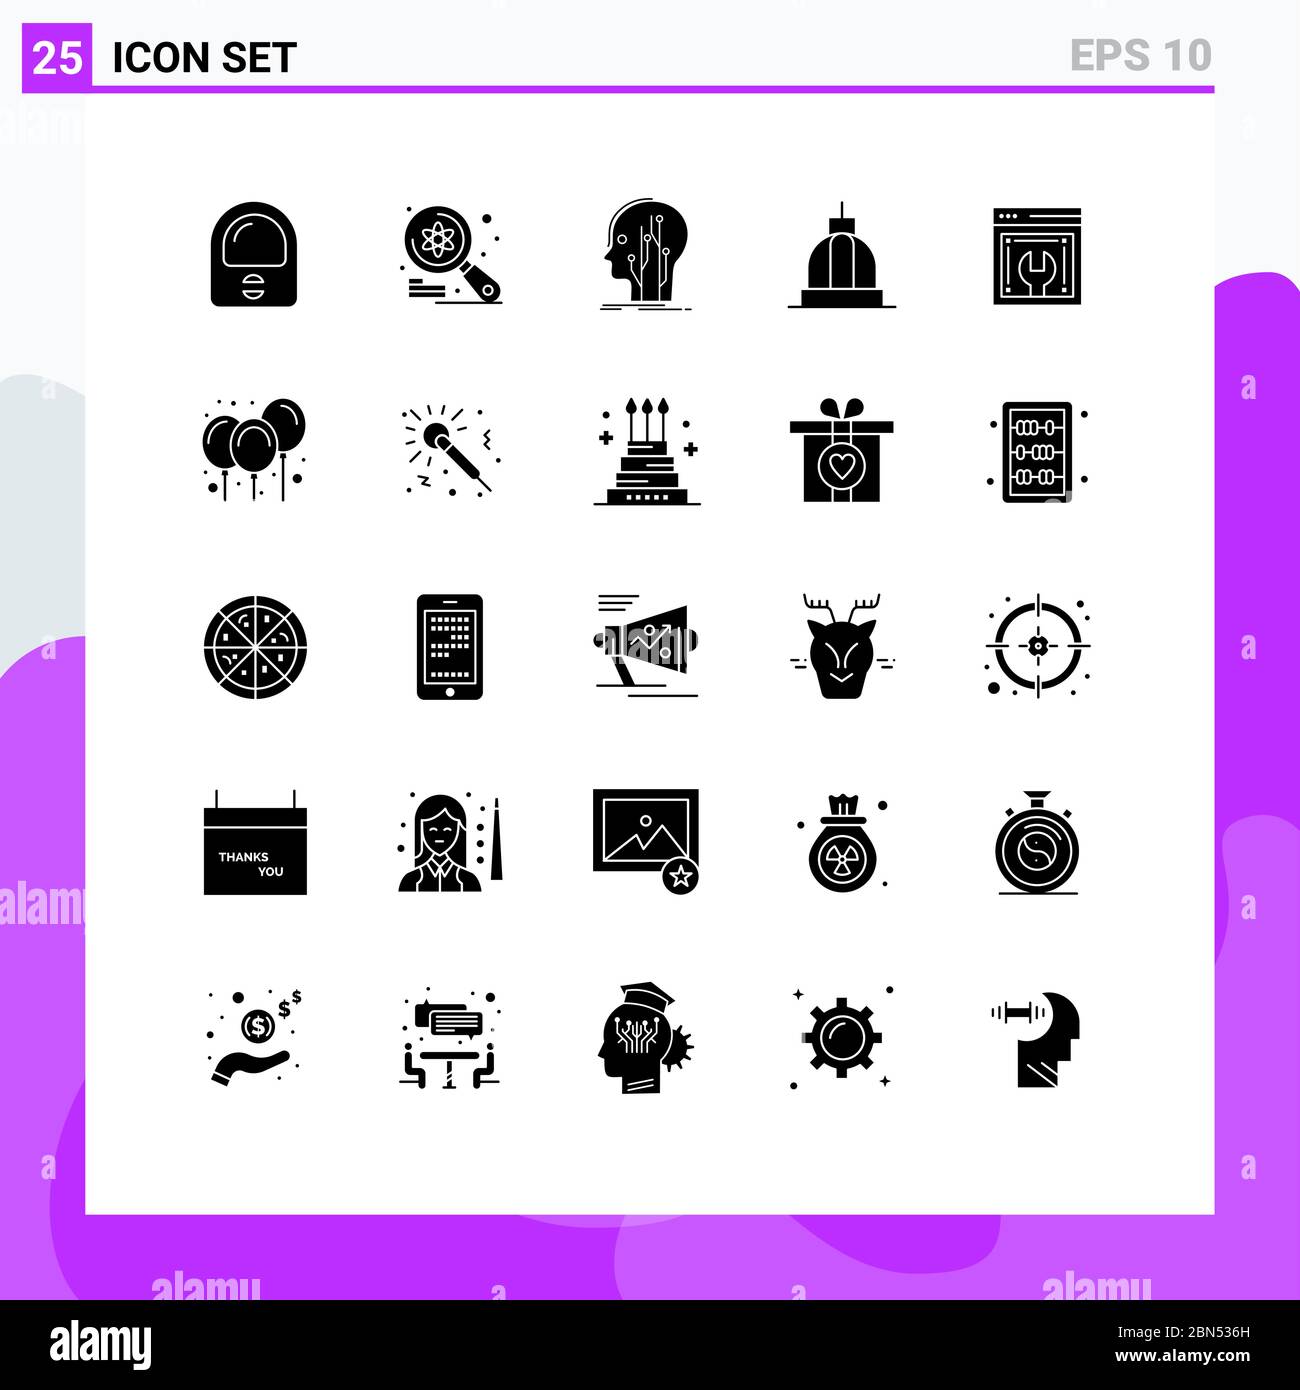 25 interfaccia utente Solid Glyph pacchetto di segni moderni e simboli di greco, costruzione, dati, banca, rete elementi di progettazione vettoriale editabili Illustrazione Vettoriale